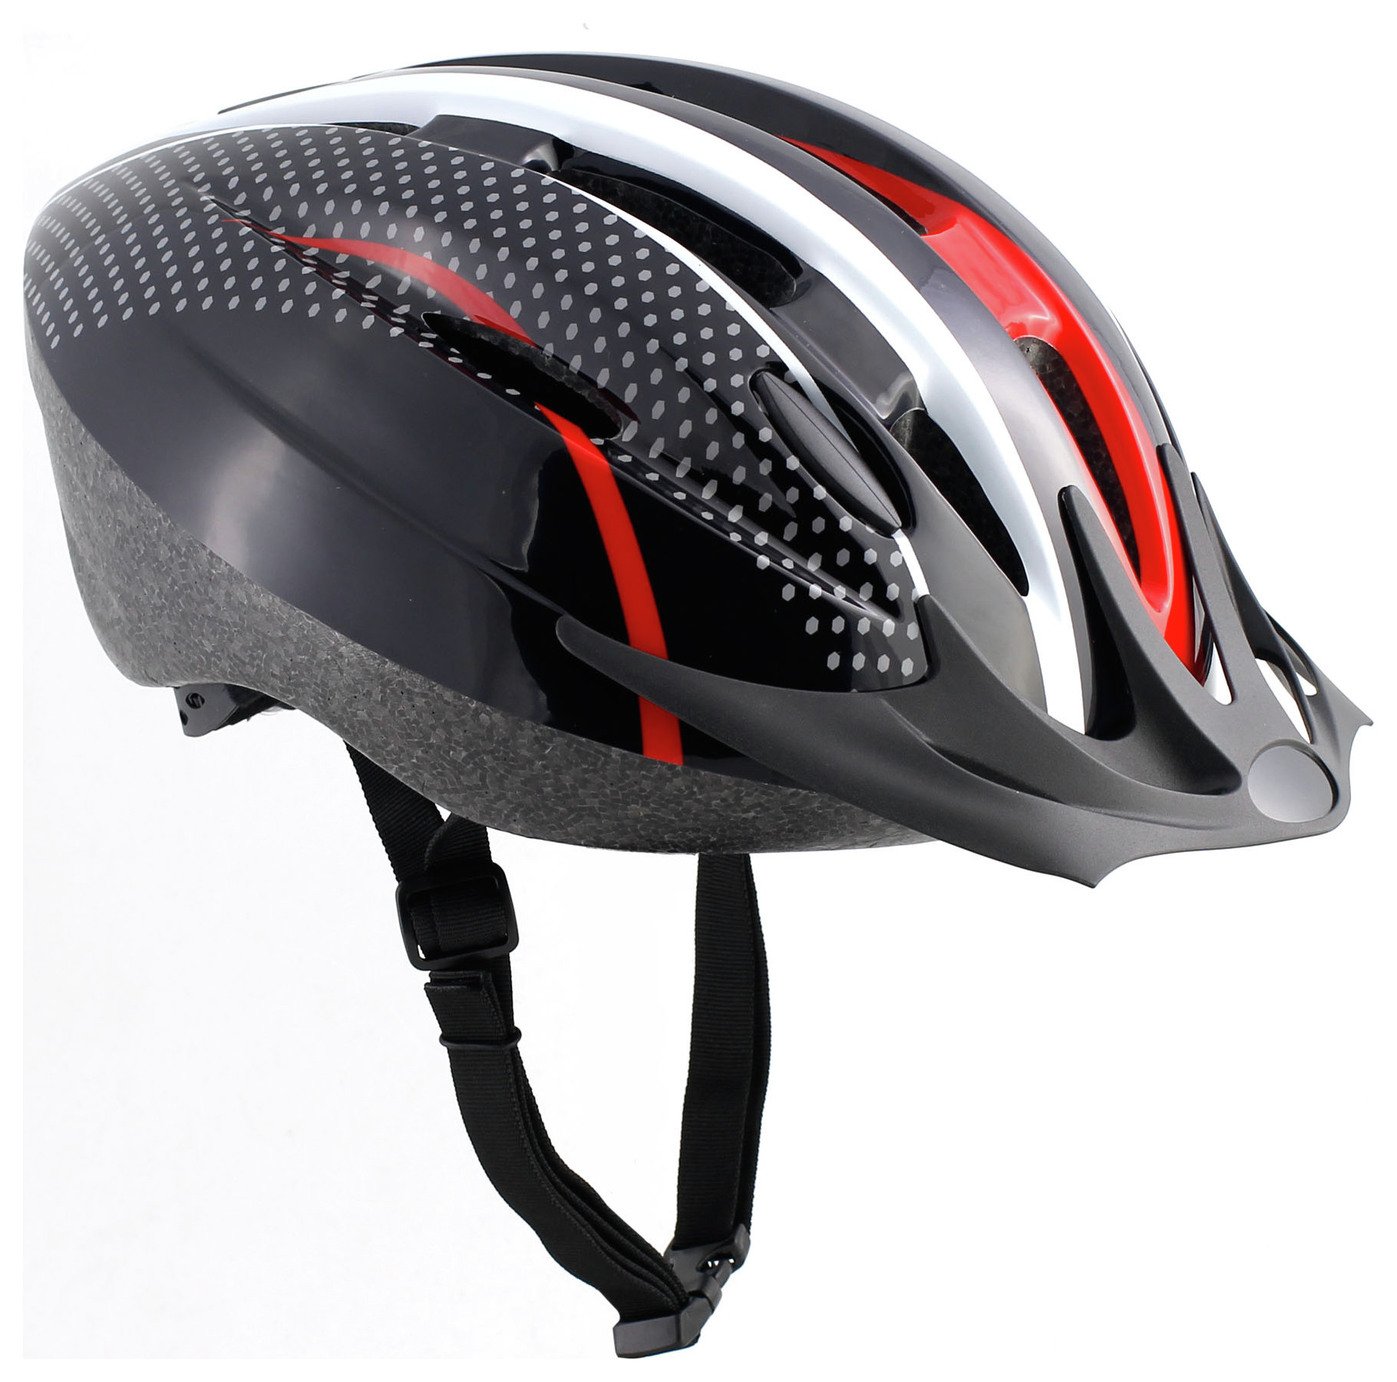 asda bike helmet